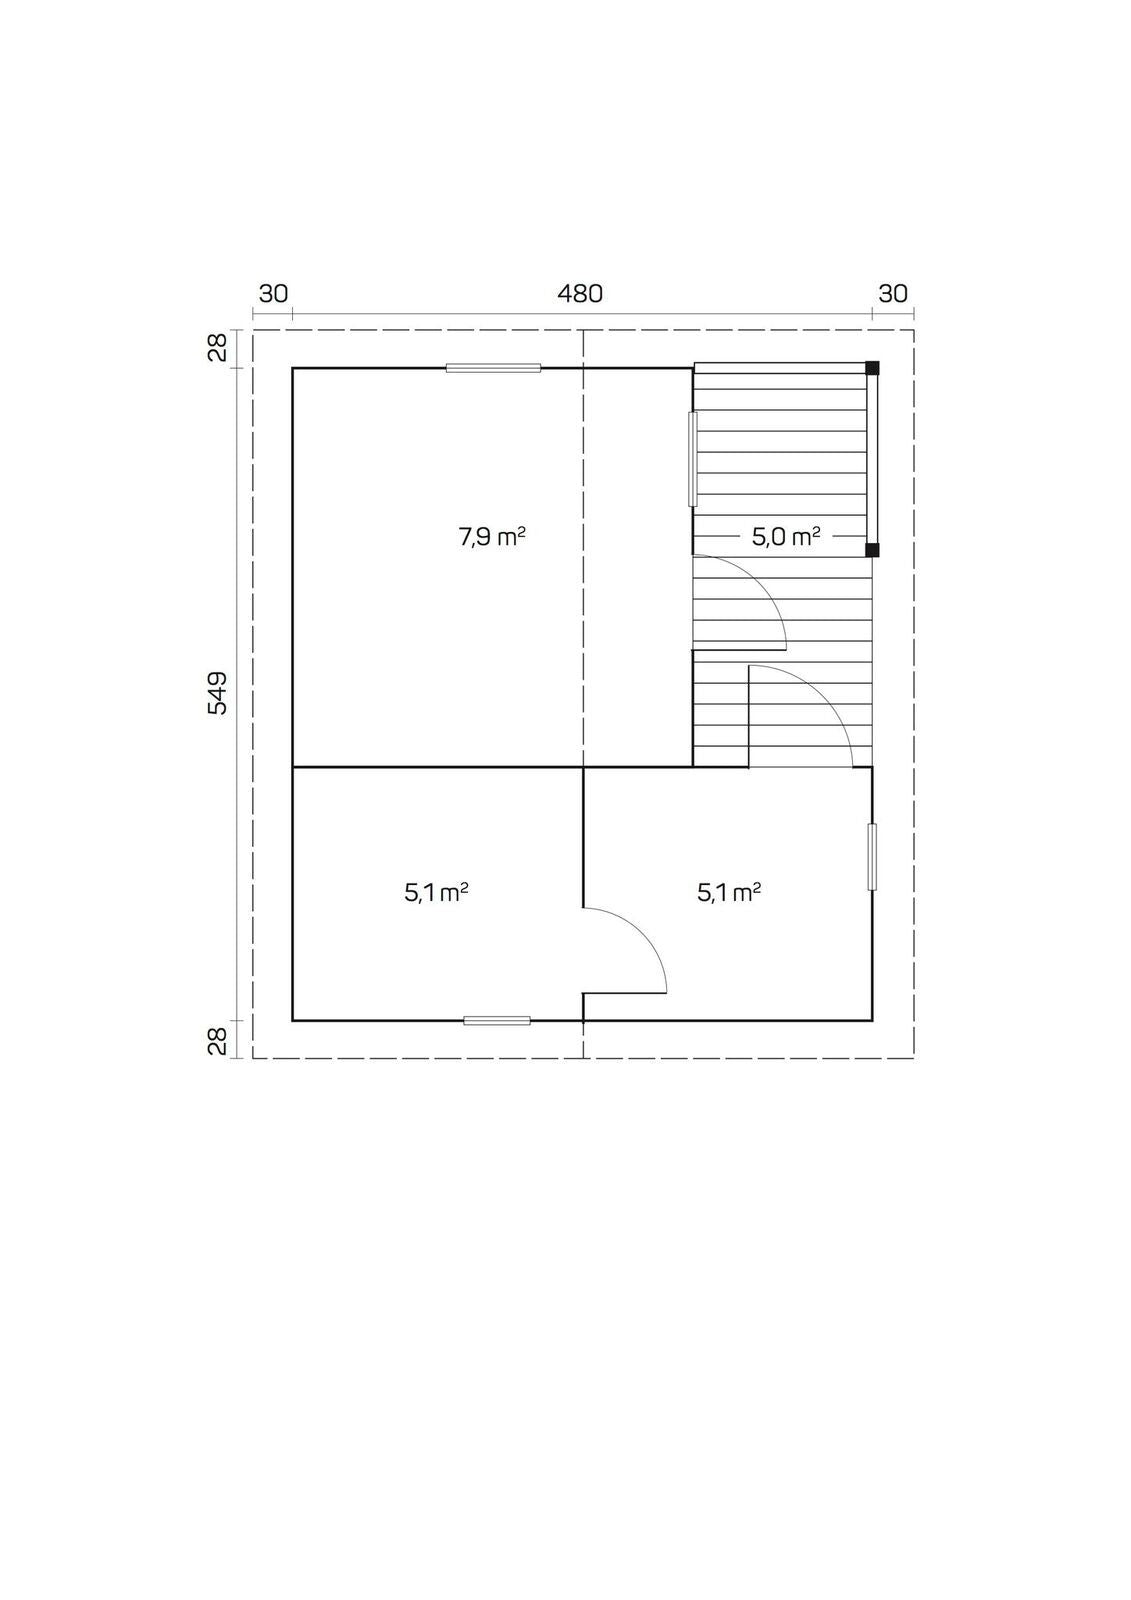 TOMMI 5.0x5.6m Sauna Log Cabin Plan